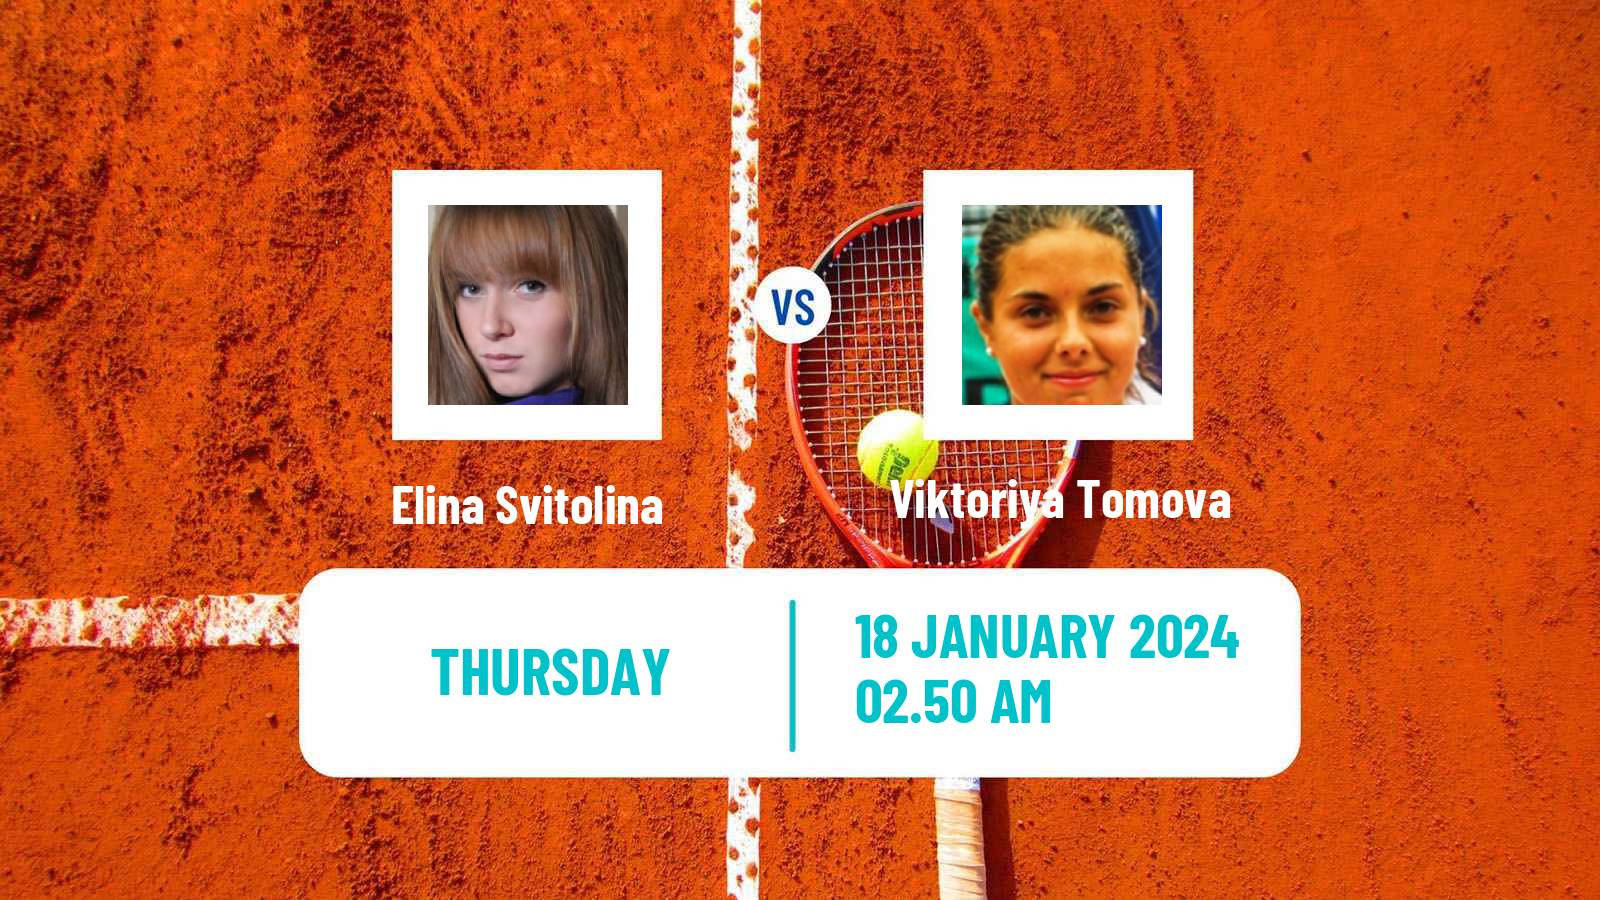 Tennis WTA Australian Open Elina Svitolina - Viktoriya Tomova